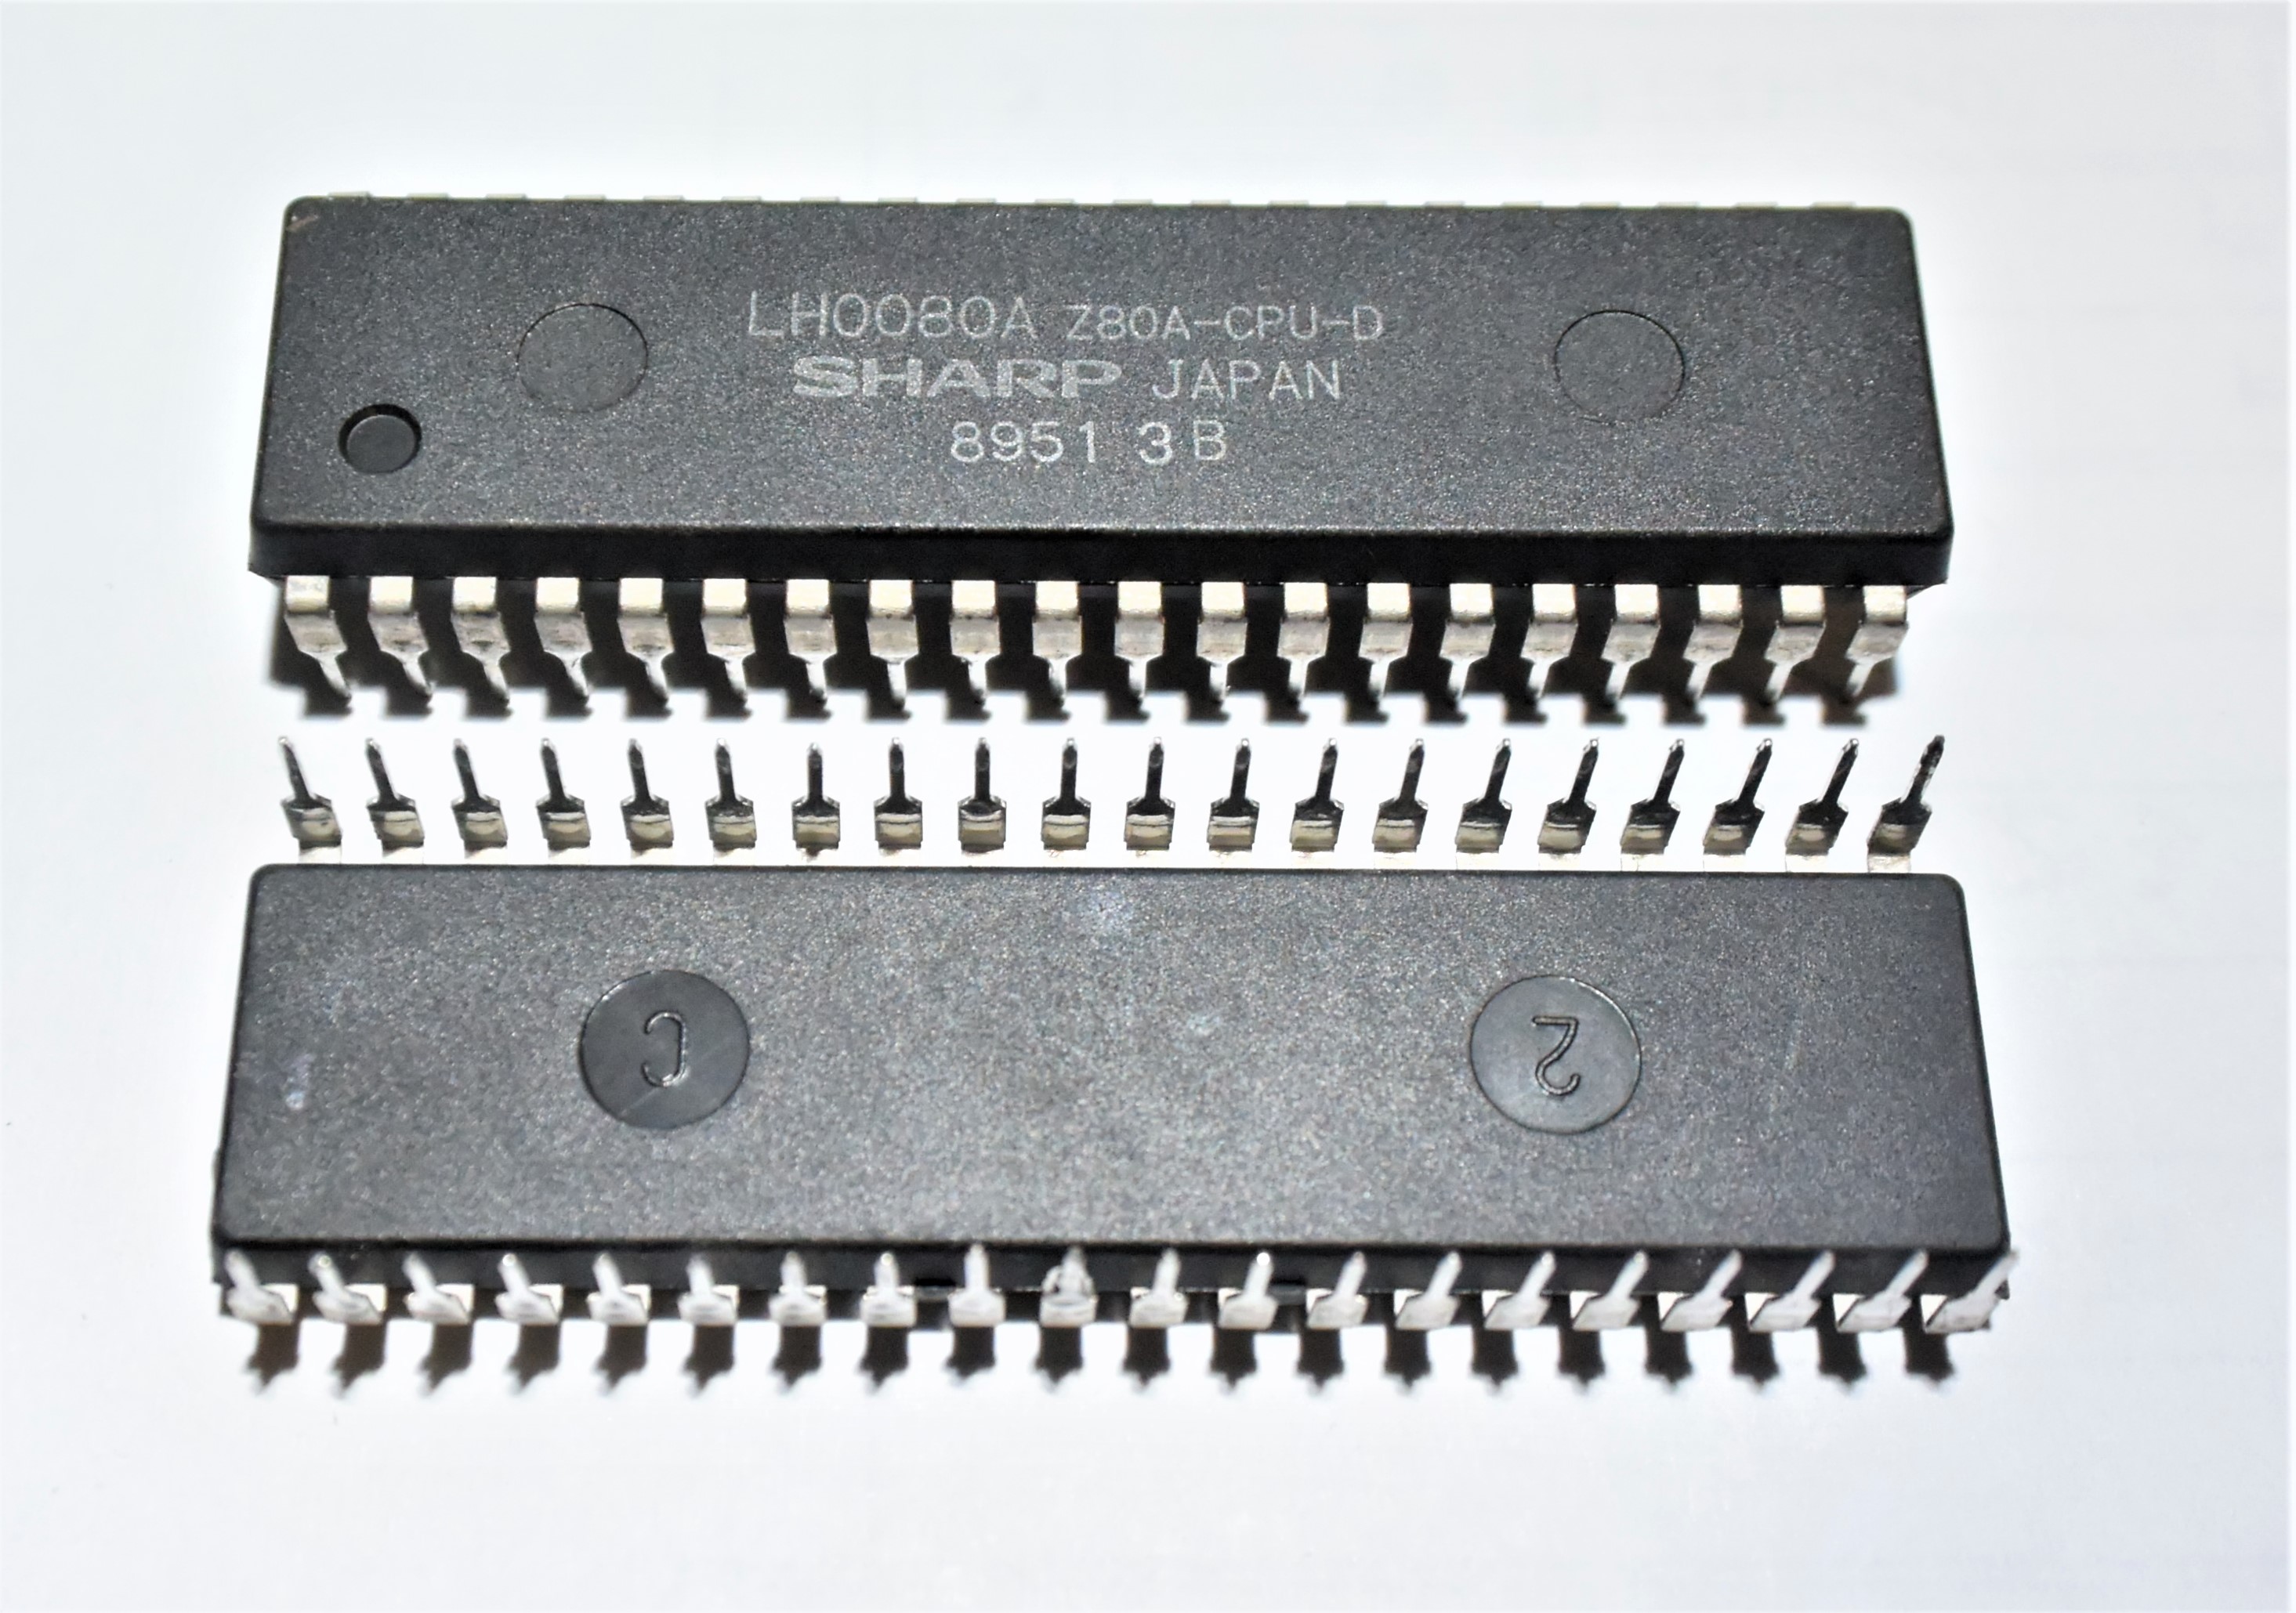 LH0080A  Z80A-CPU